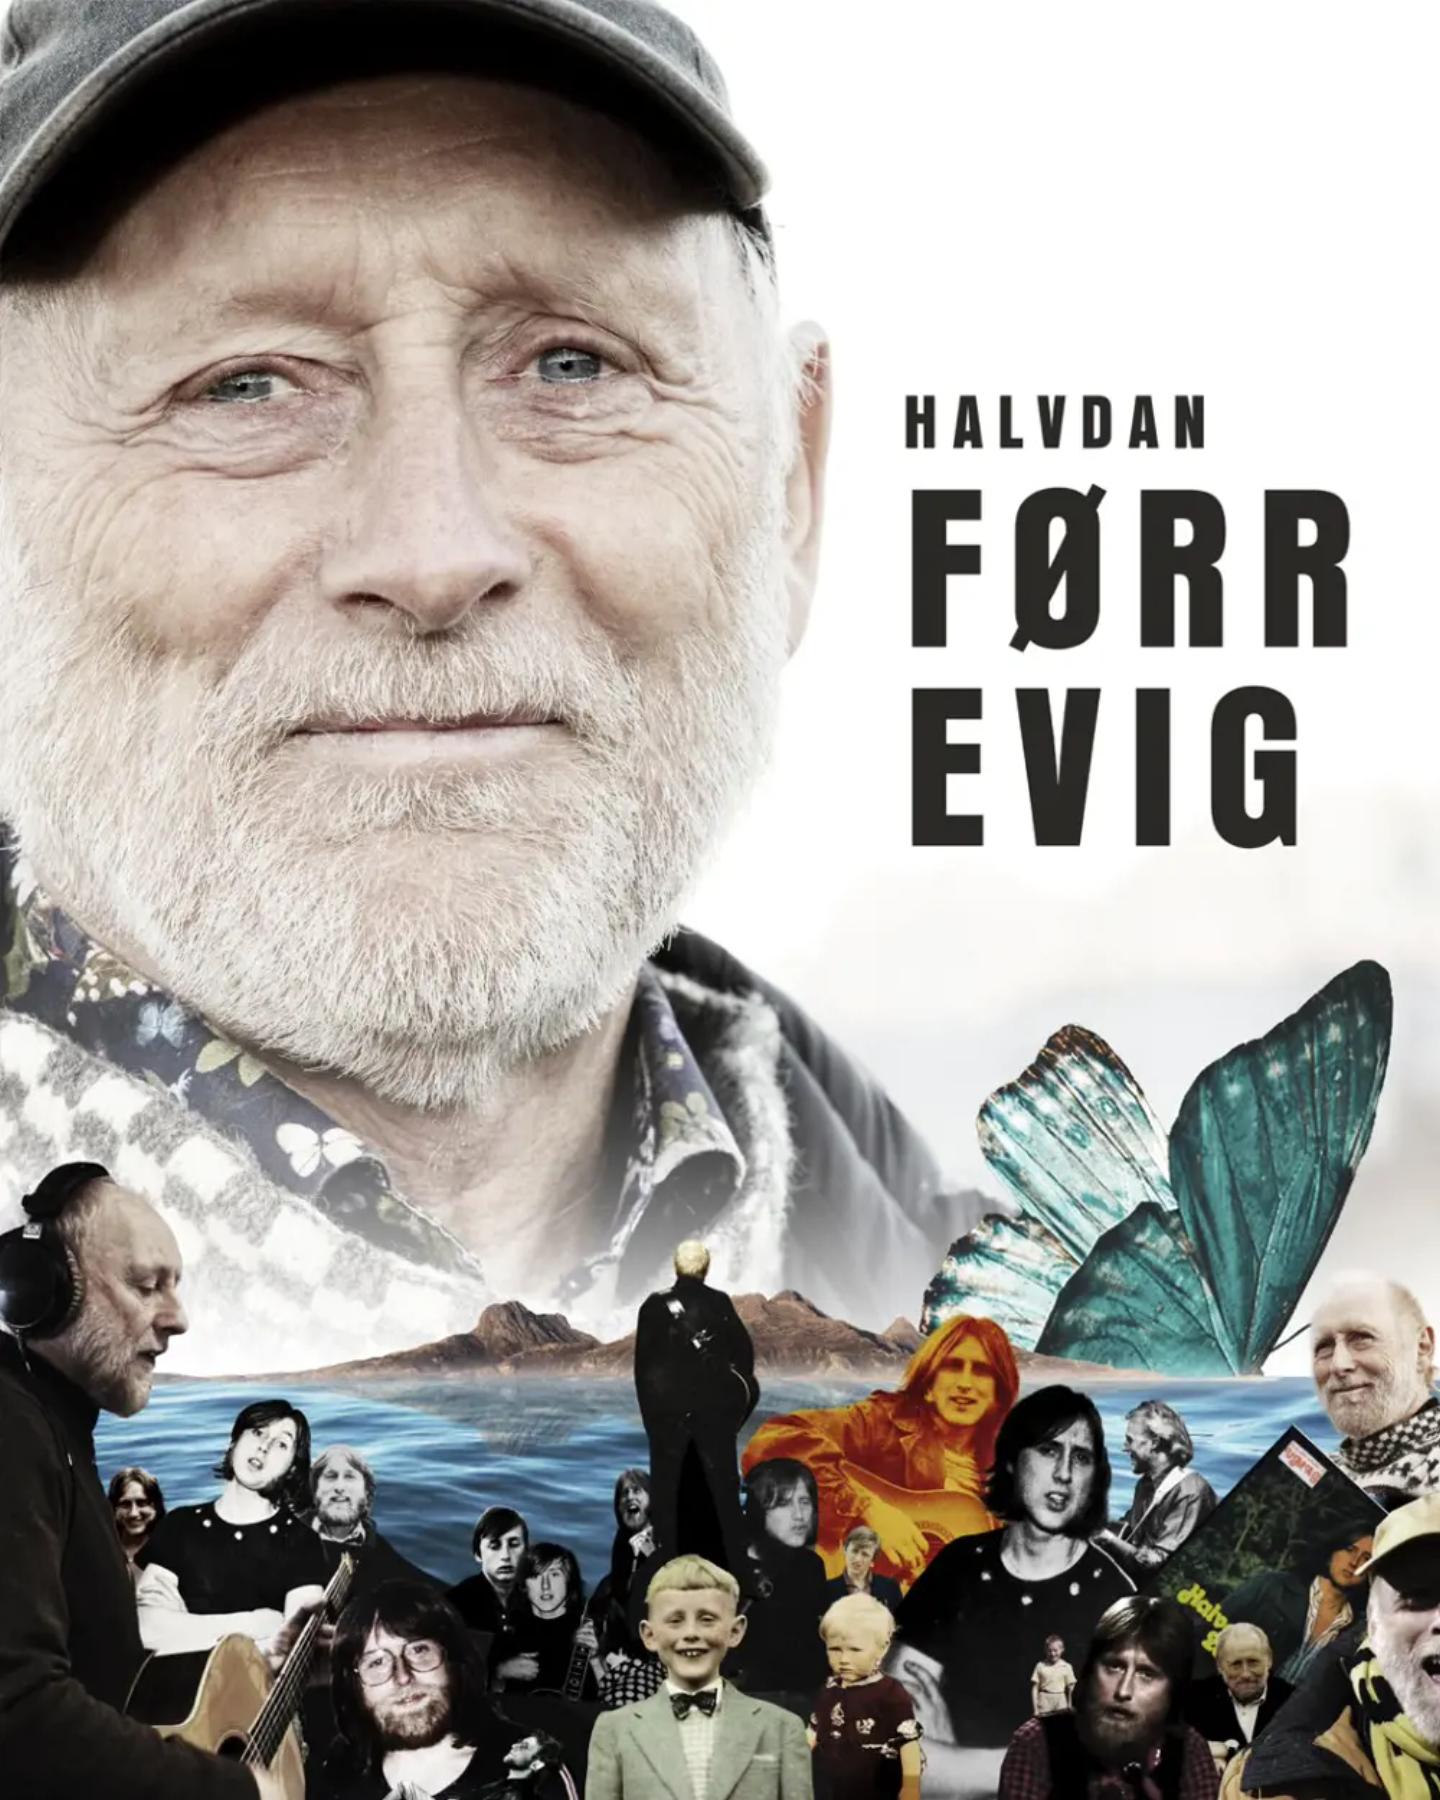 Plakat for 'Halvdan førr evig'